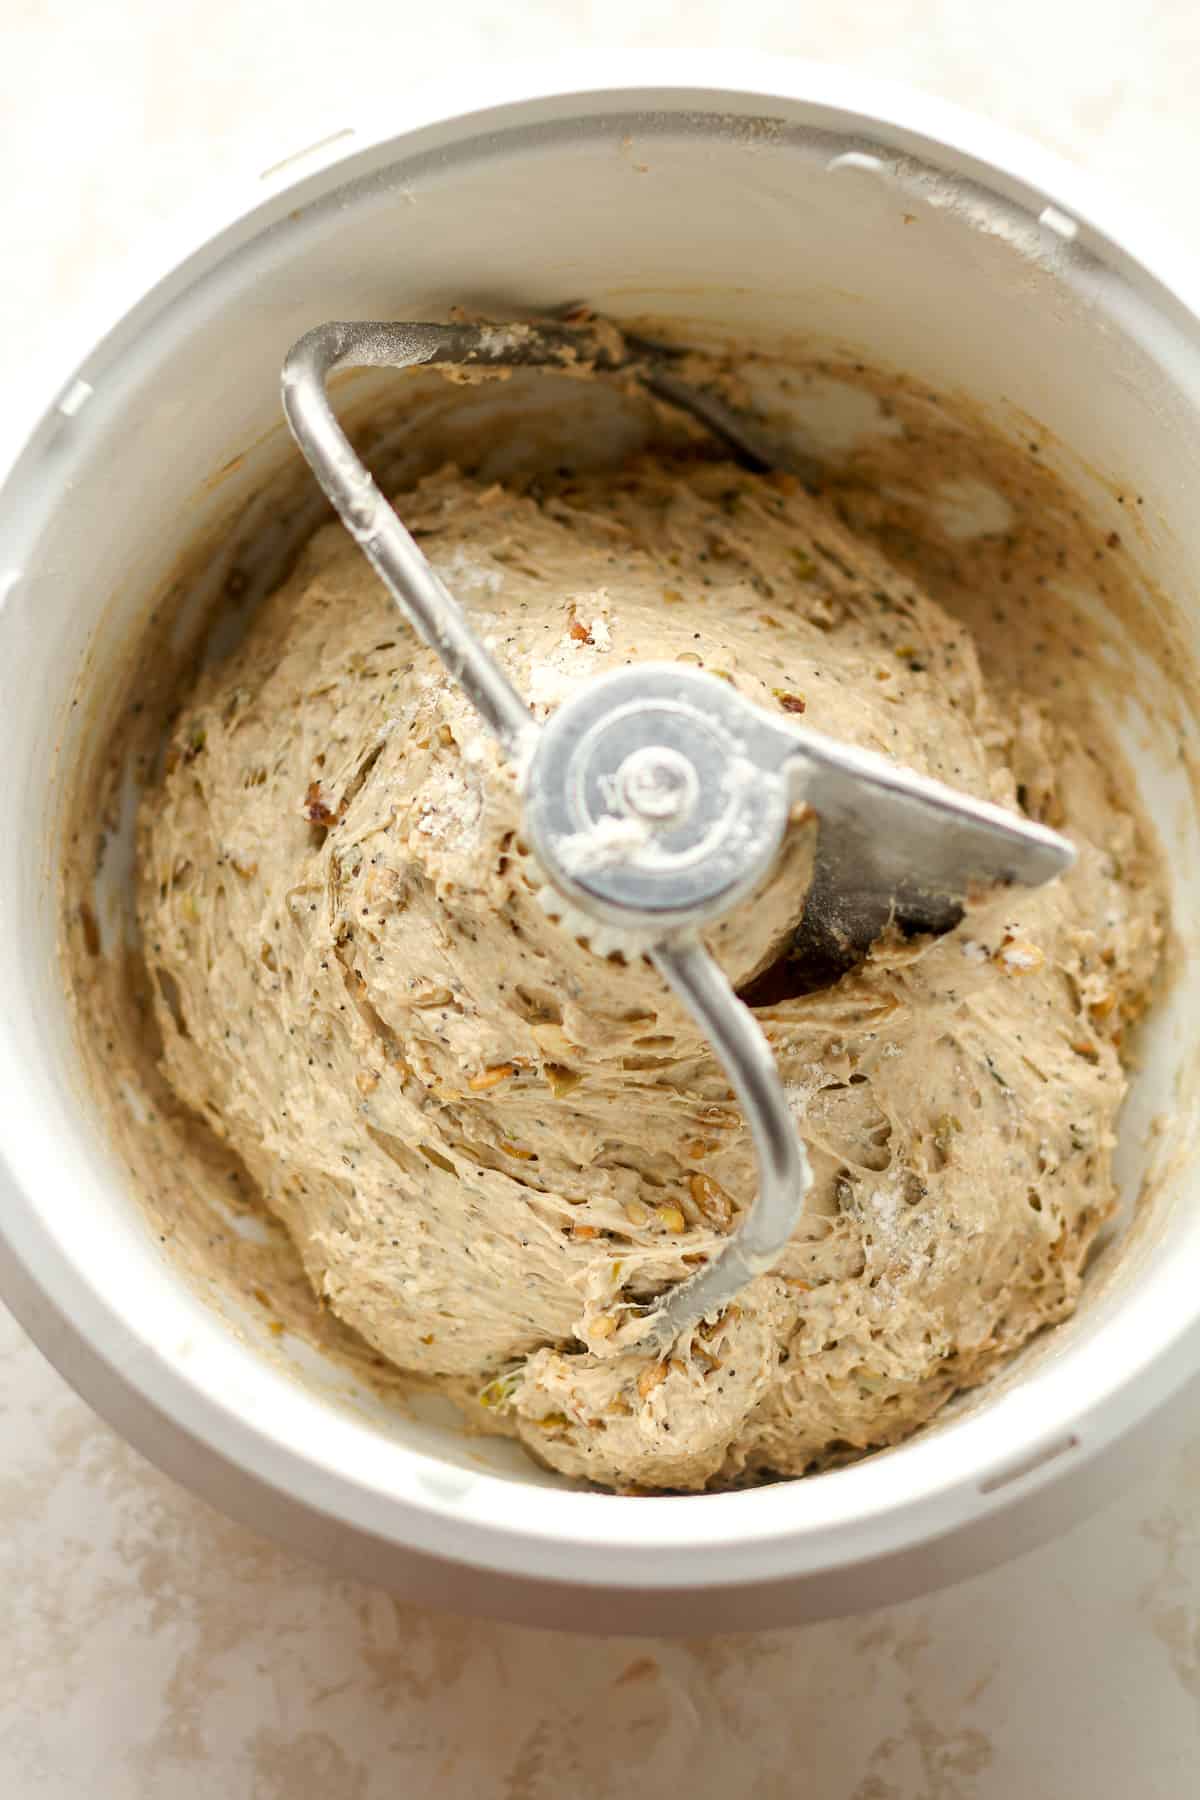 A mixer bowl with the multigrain dough.